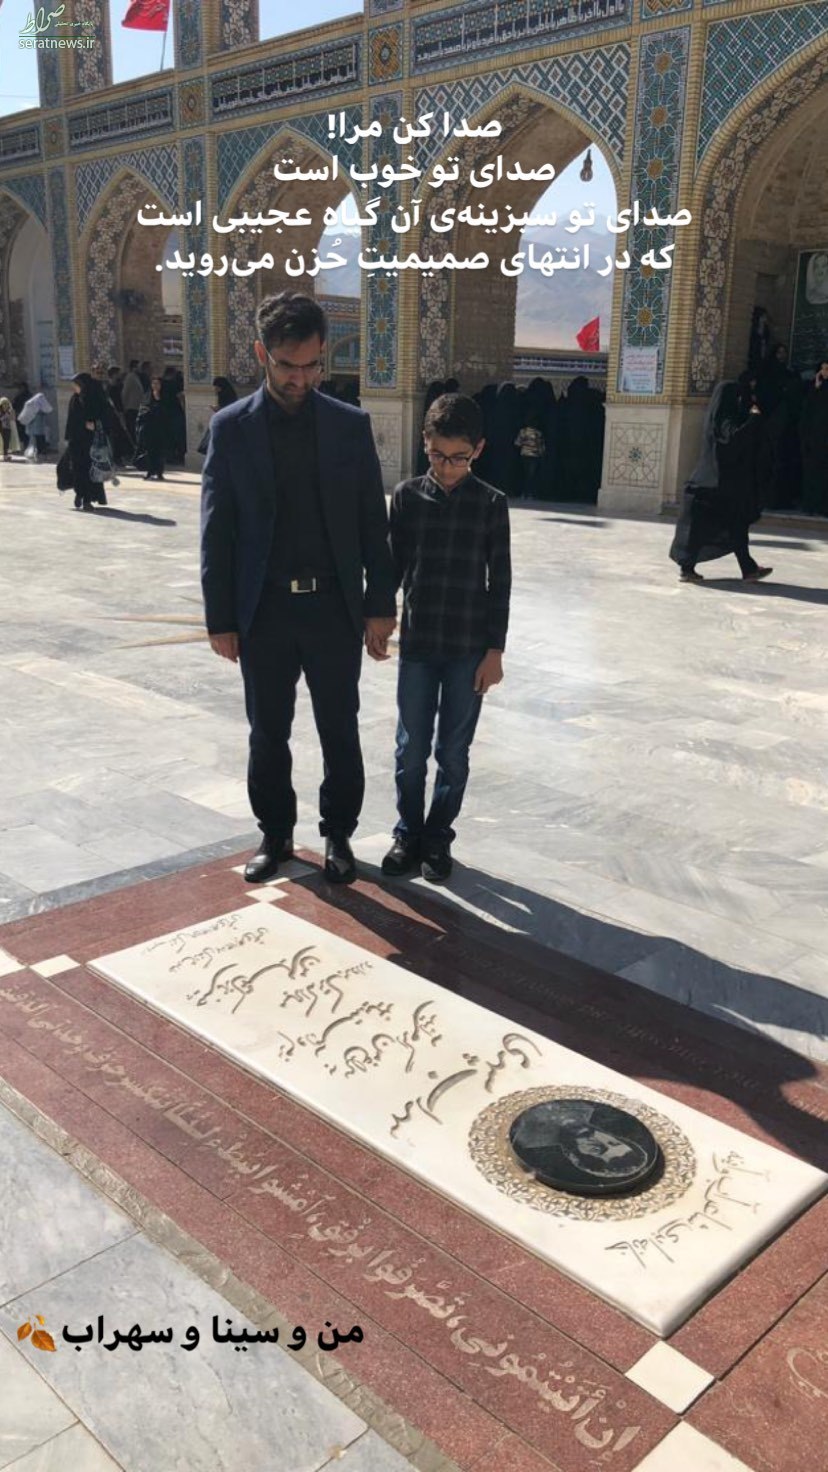 عکس/ آذری جهرمی همراه پسرش بر سر مزار سهراب سپهری